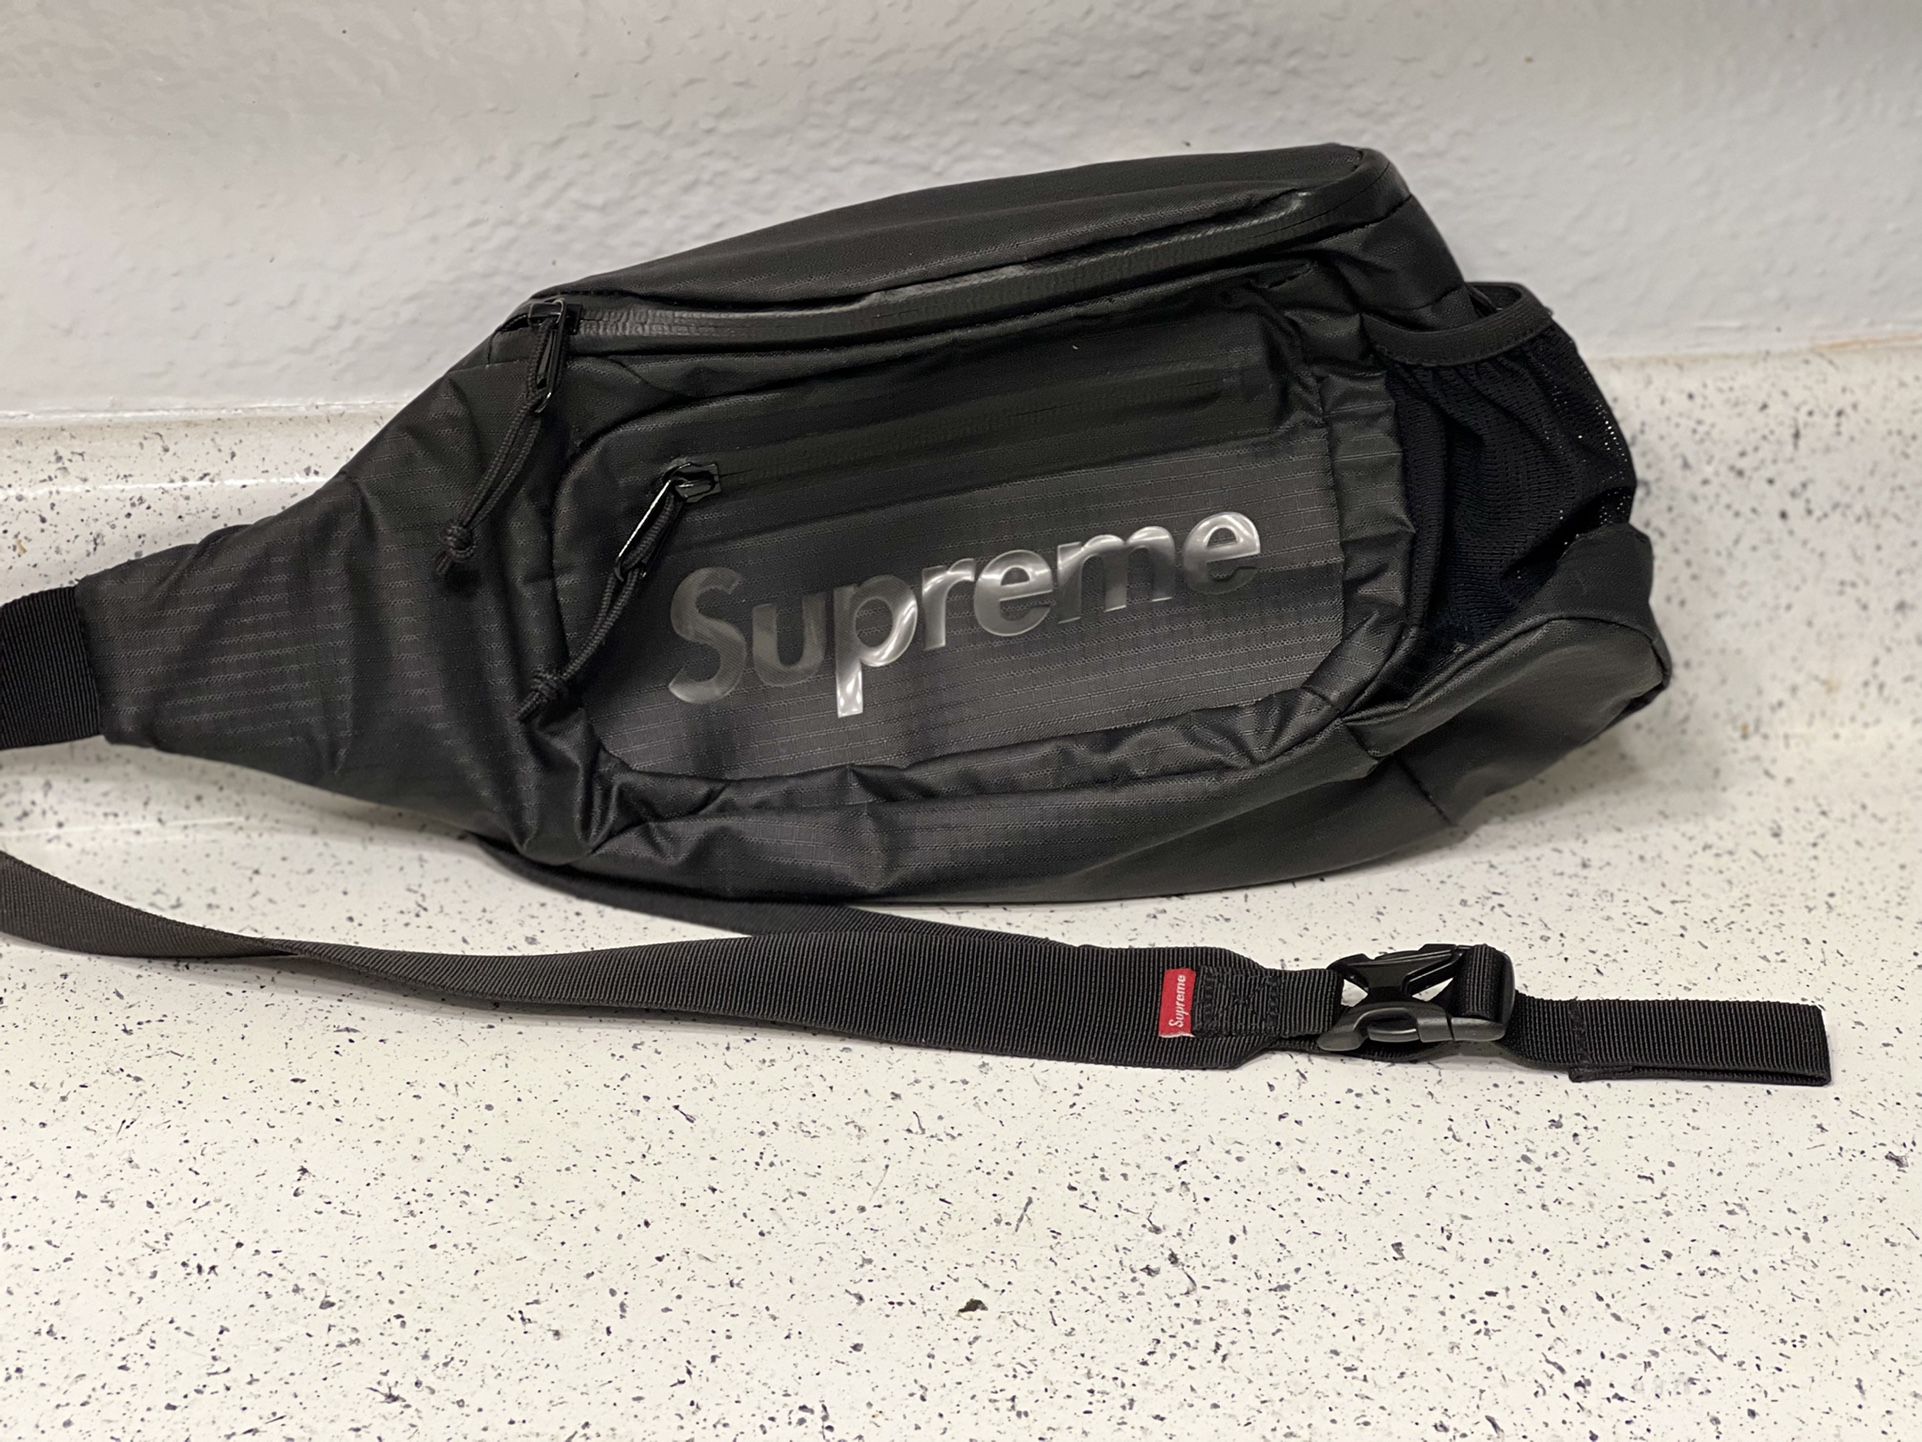 Supreme Sling Bag Bag (FW21) Black